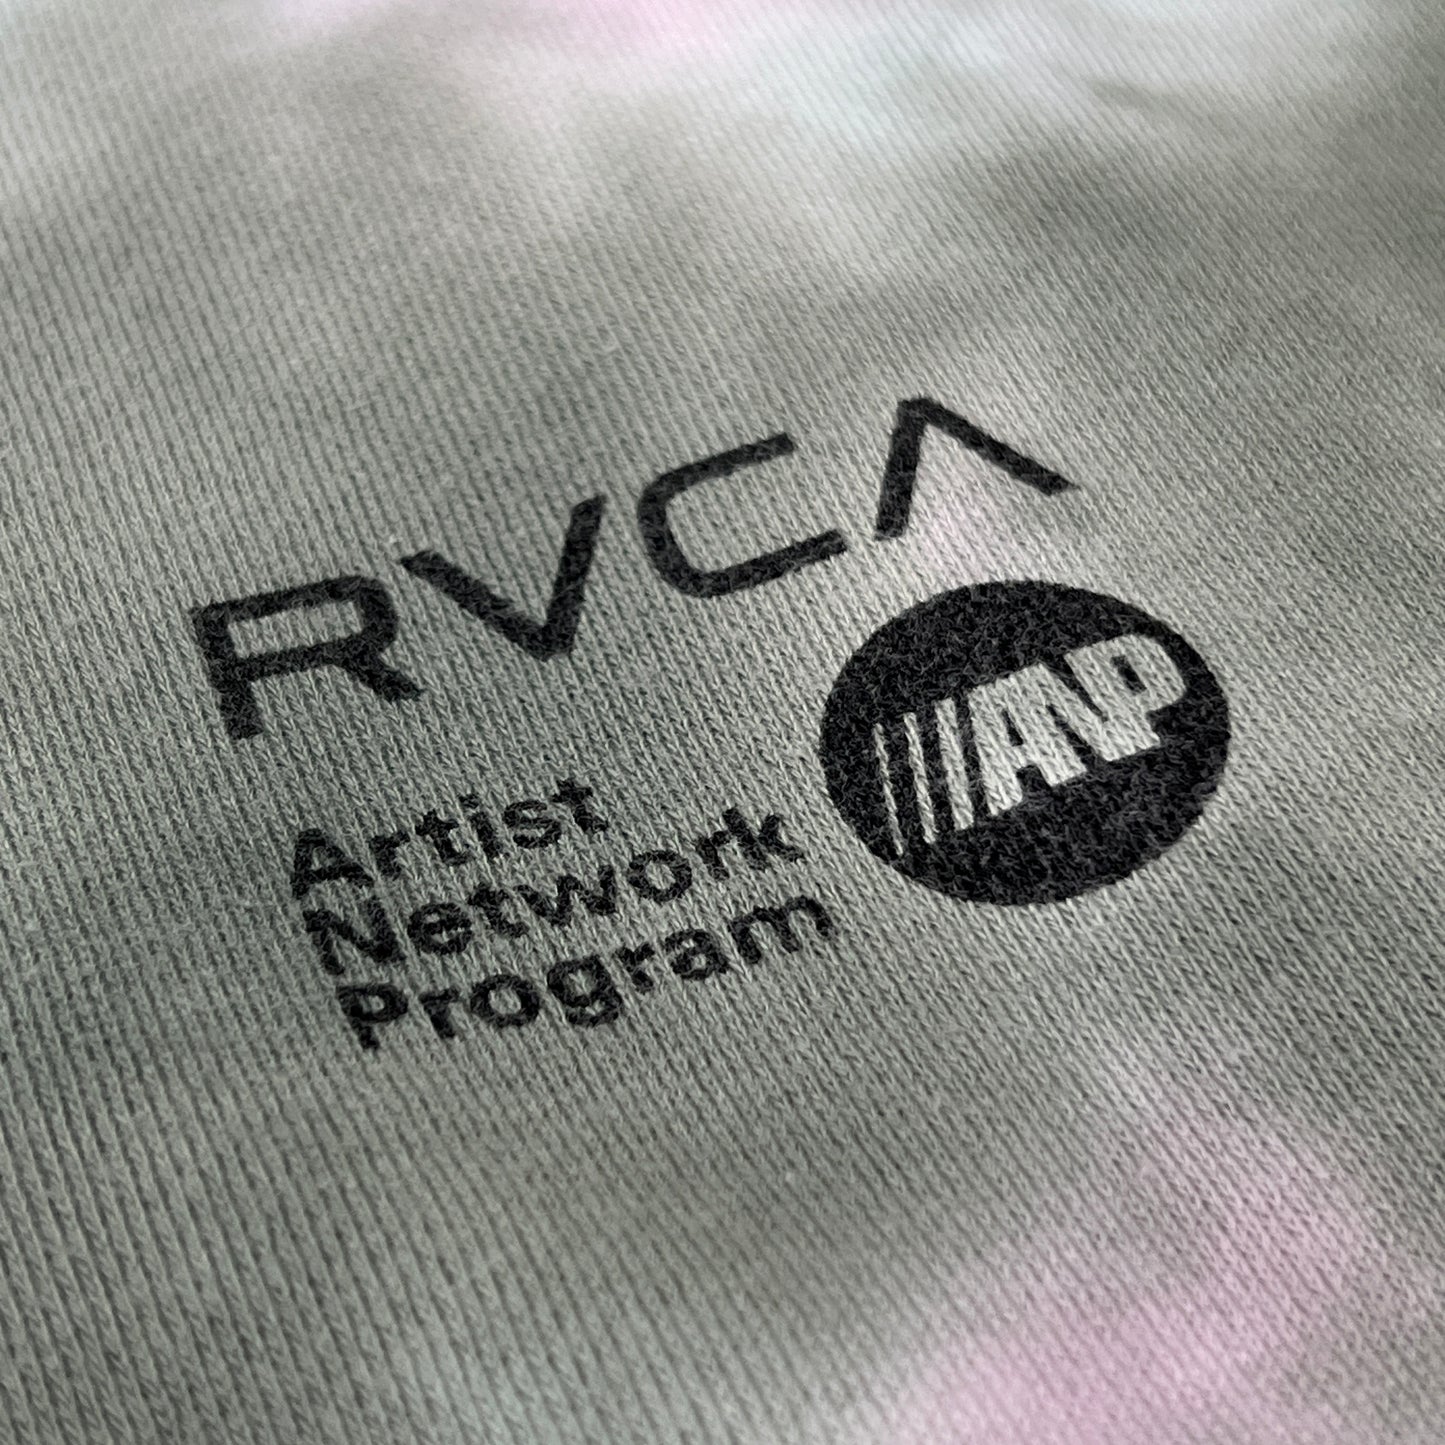 RVCA Artist Network Program Tie Dye Hoodie Youth Sz S / 10 AVBSF00106 Green (New)